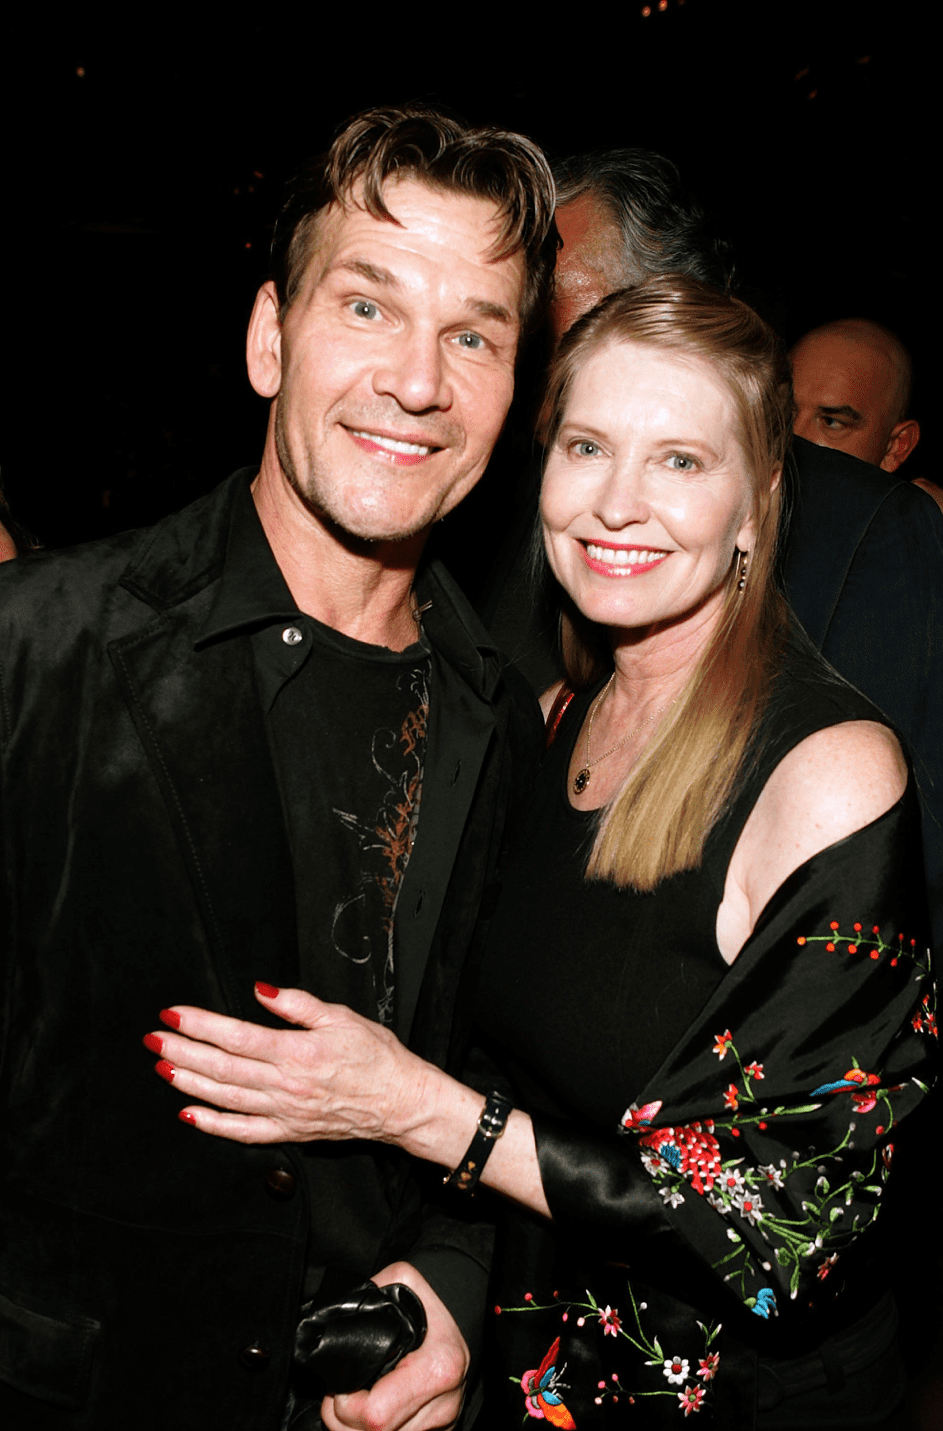 Patrick Swayze und seine Frau Lisa Niemi posieren bei der Premiere von "Rocky Balboa" am 13. Dezember 13 2006, in Hollywood, Kalifornien. | Quelle: Getty Images